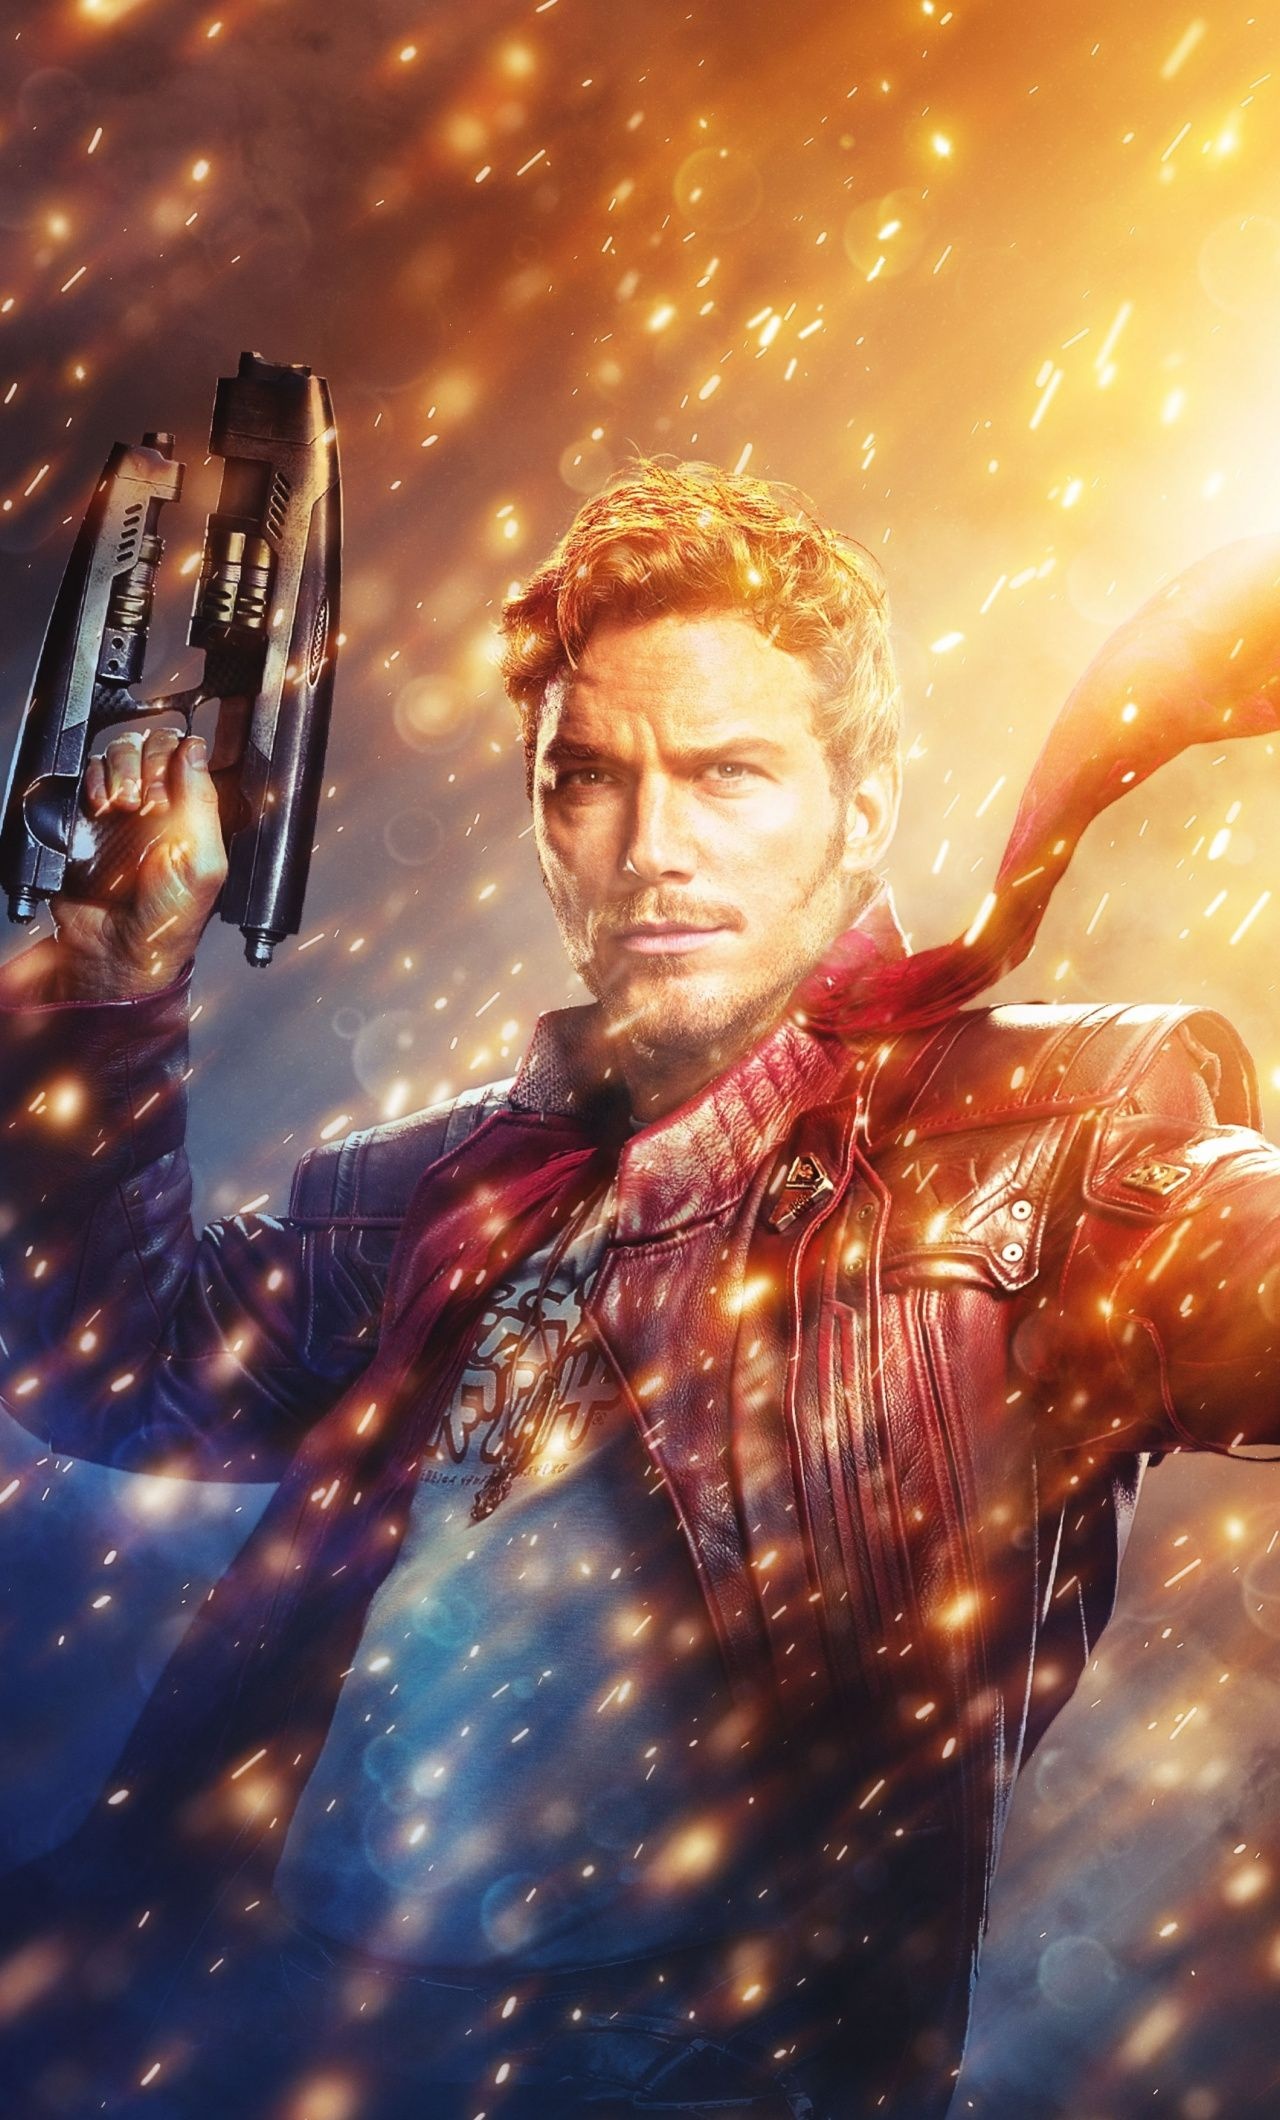 Chris Pratt: The Guardians of the Galaxy, Movie star, Star-Lord. 1280x2120 HD Wallpaper.